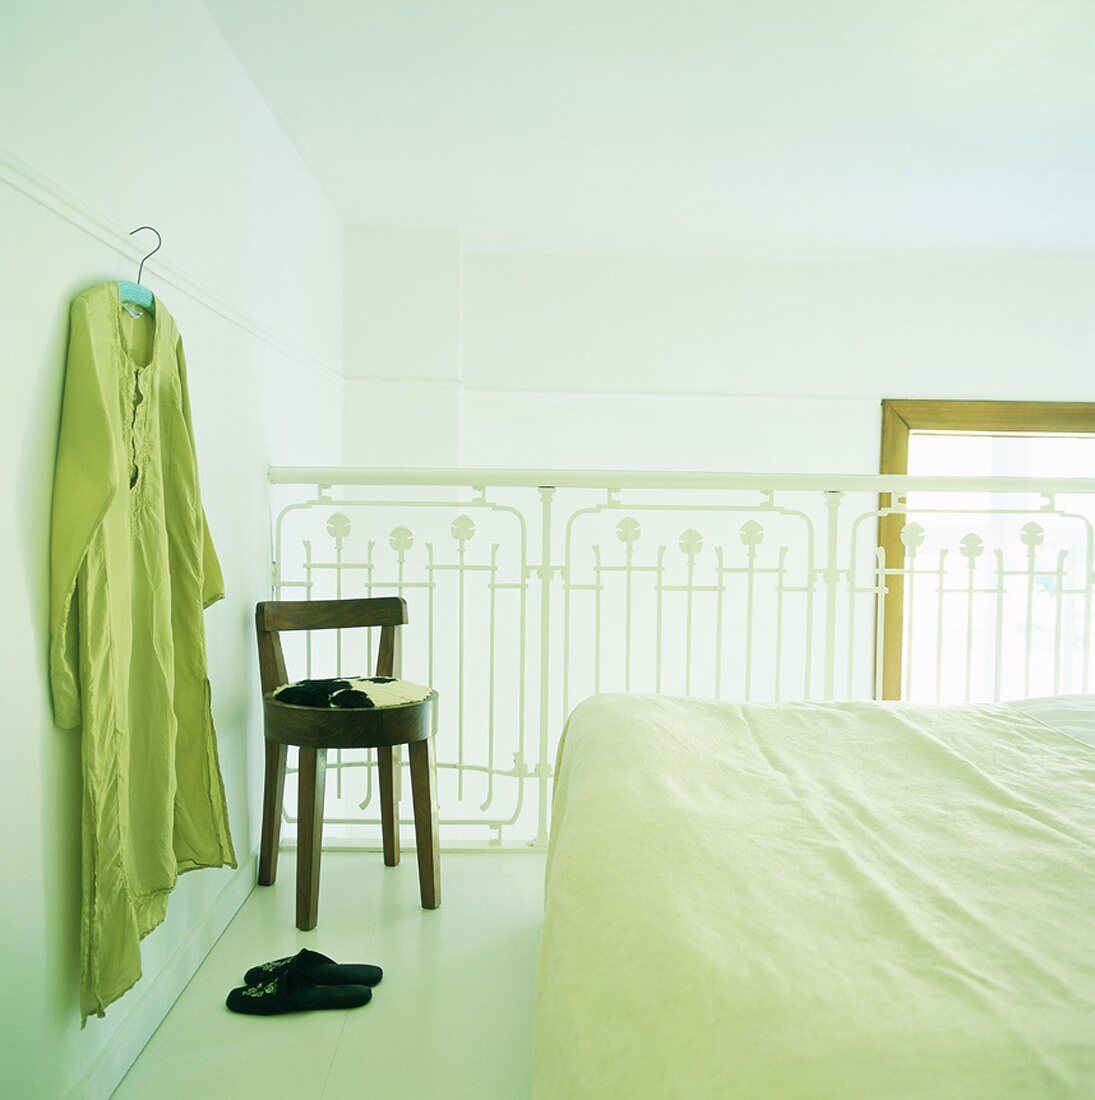 Doppelbett auf Galerie mit weißem Geländer; an der Wand hängt ein Kleidungsstück am Kleiderbügel